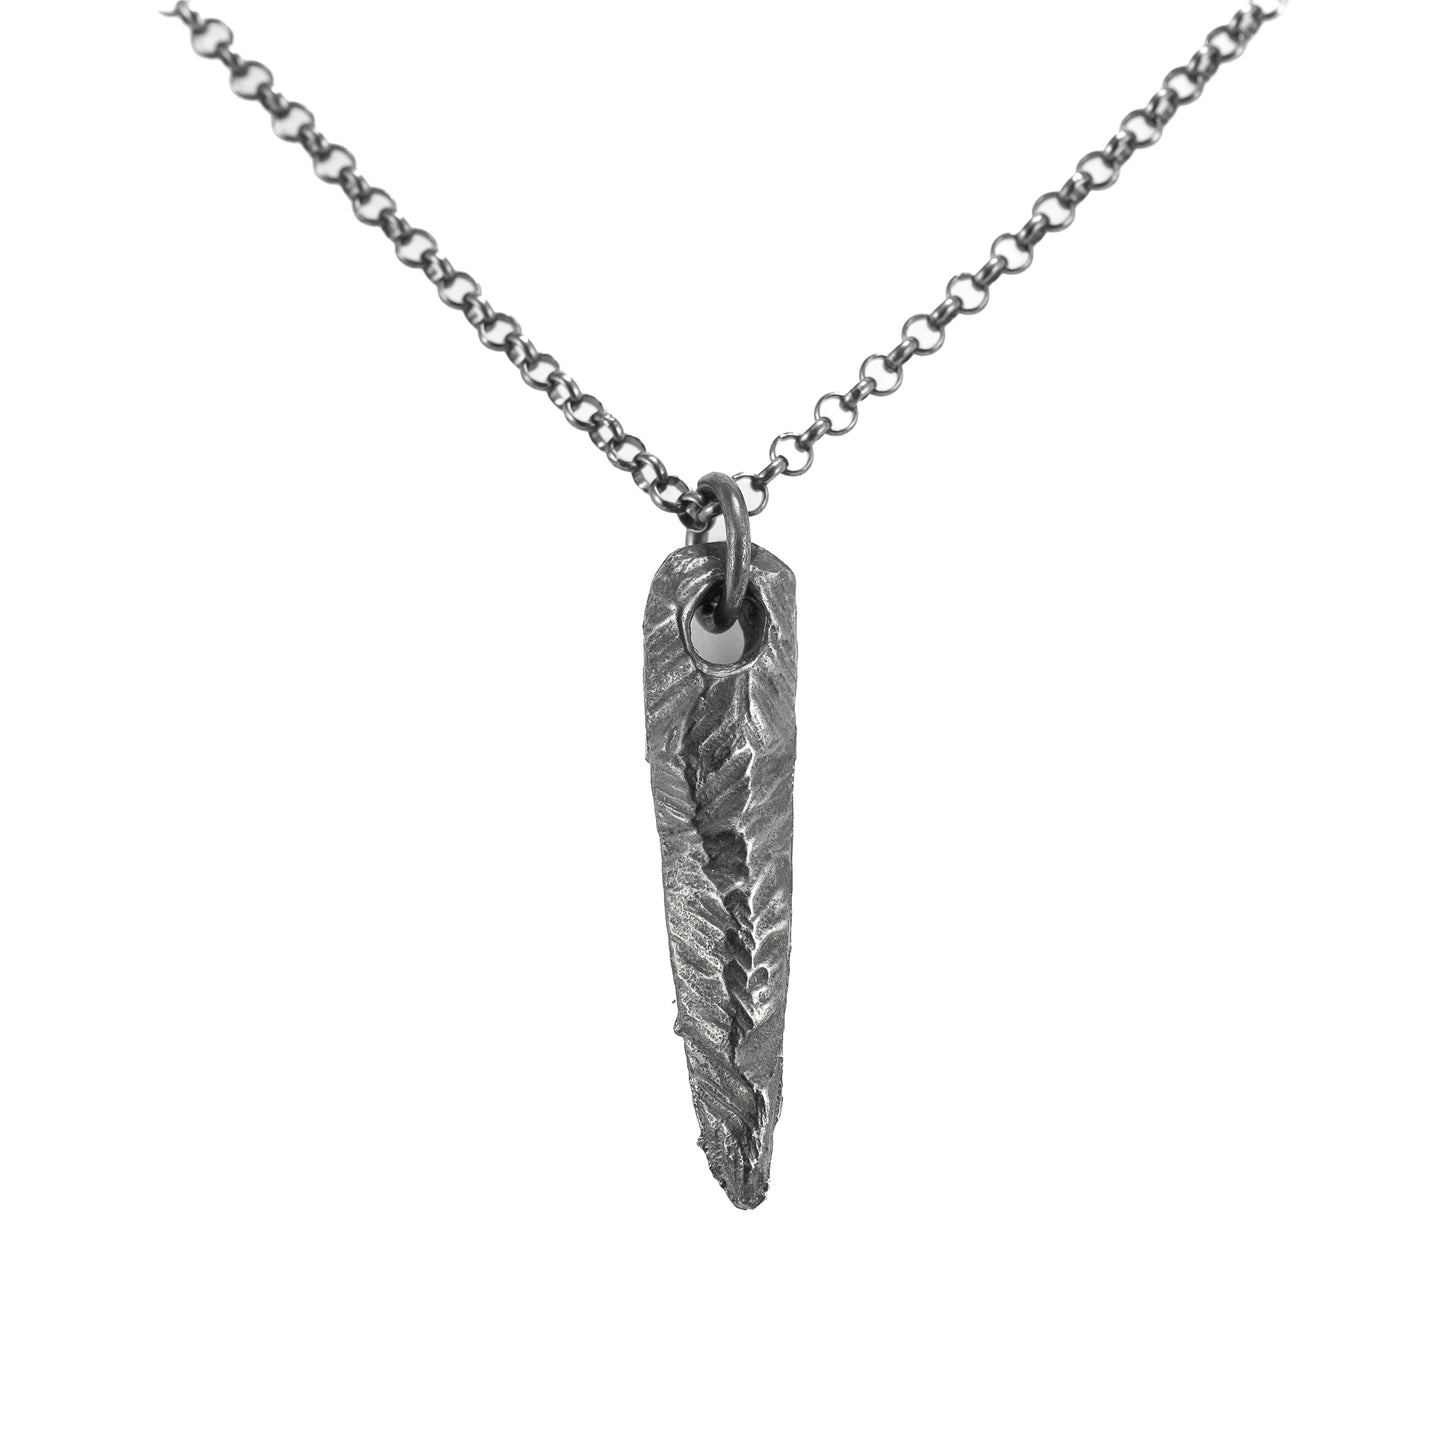 Black rustic silver necklace